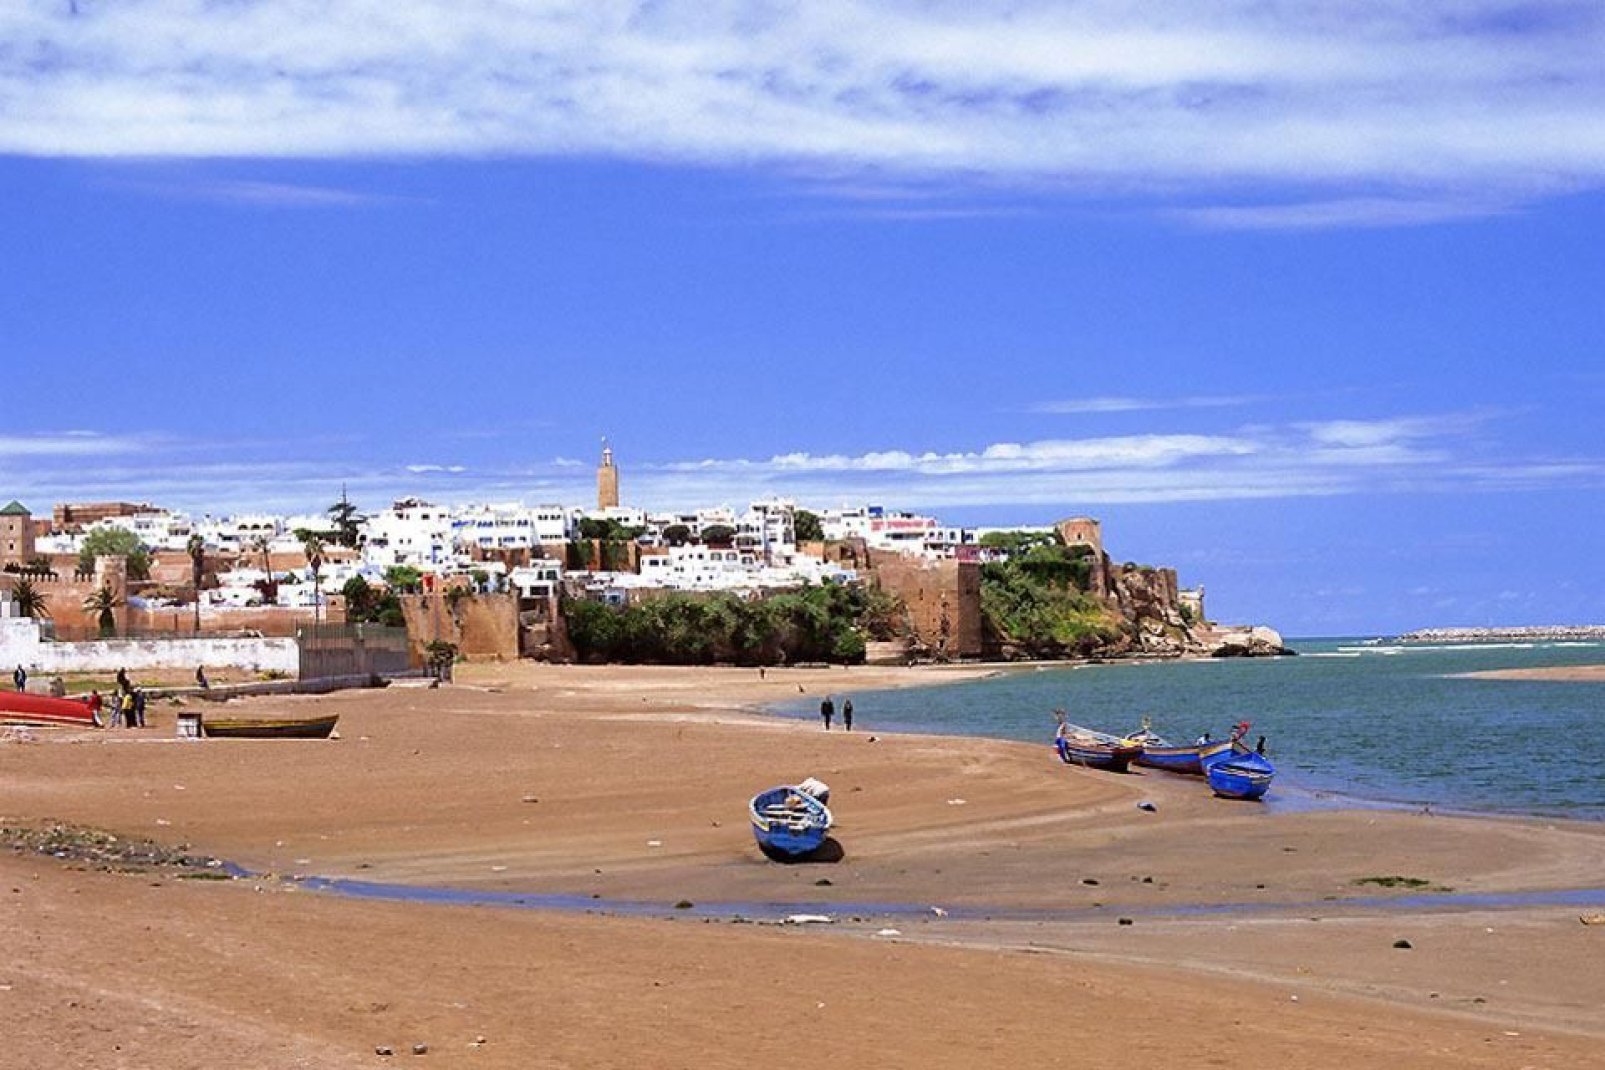 Rabat zählt zu den kaiserlichen Städten Marokkos. Ein Besuch dieser Stadt hinterläßt stets interessante Erinnerungen bei den Touristen.